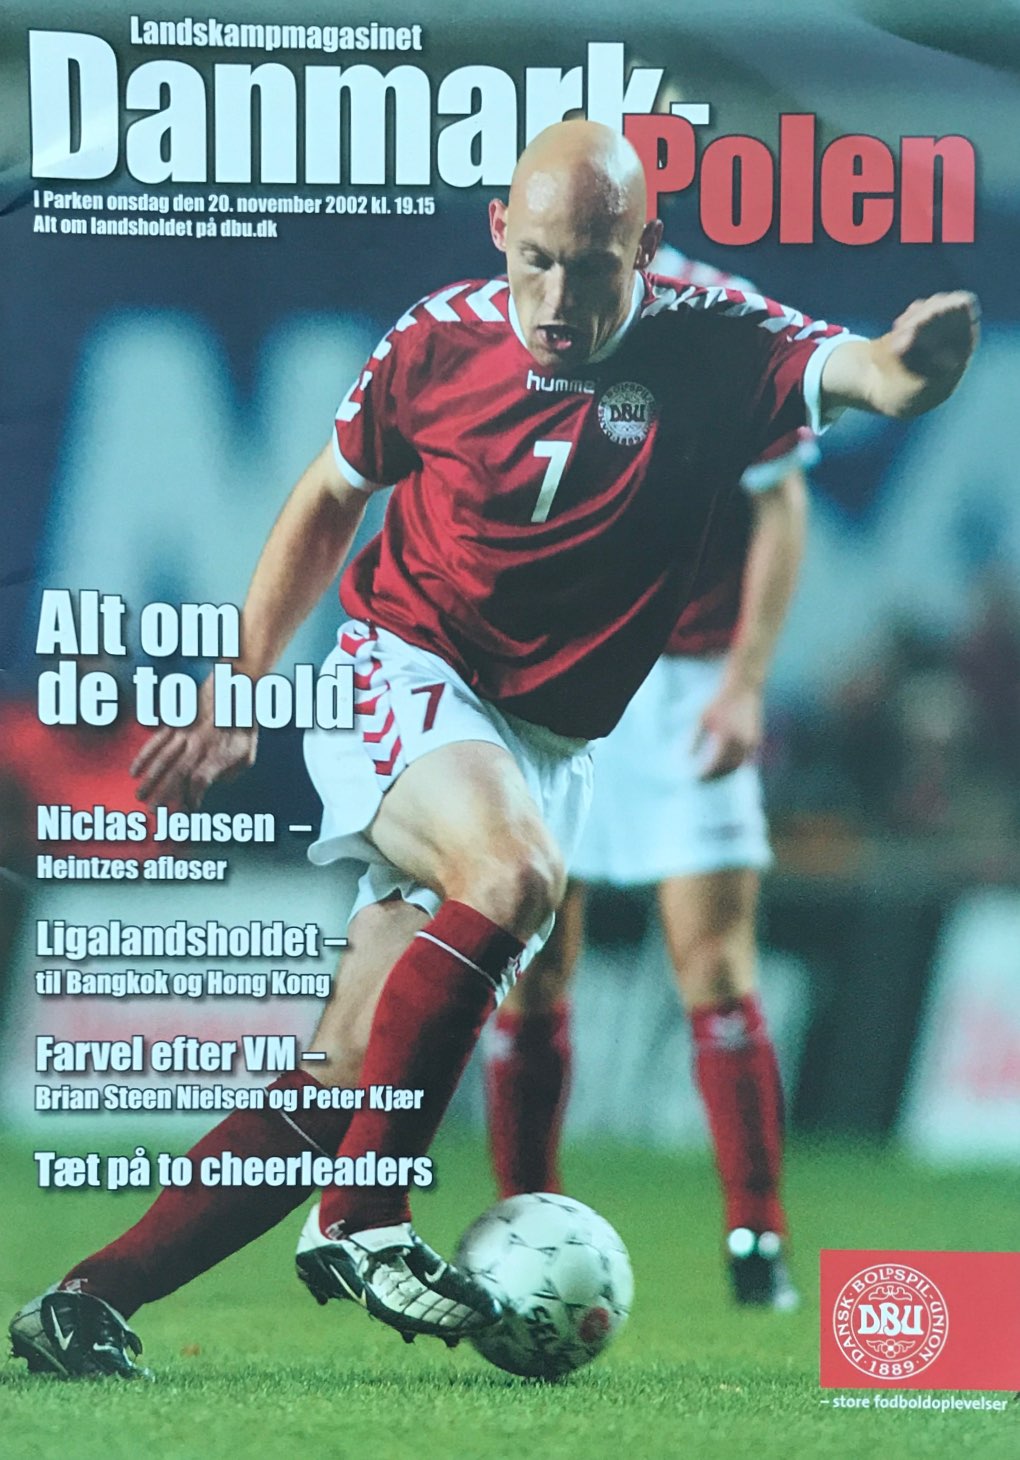 Program meczowy Dania - Polska 2:0 (20.11.2002).